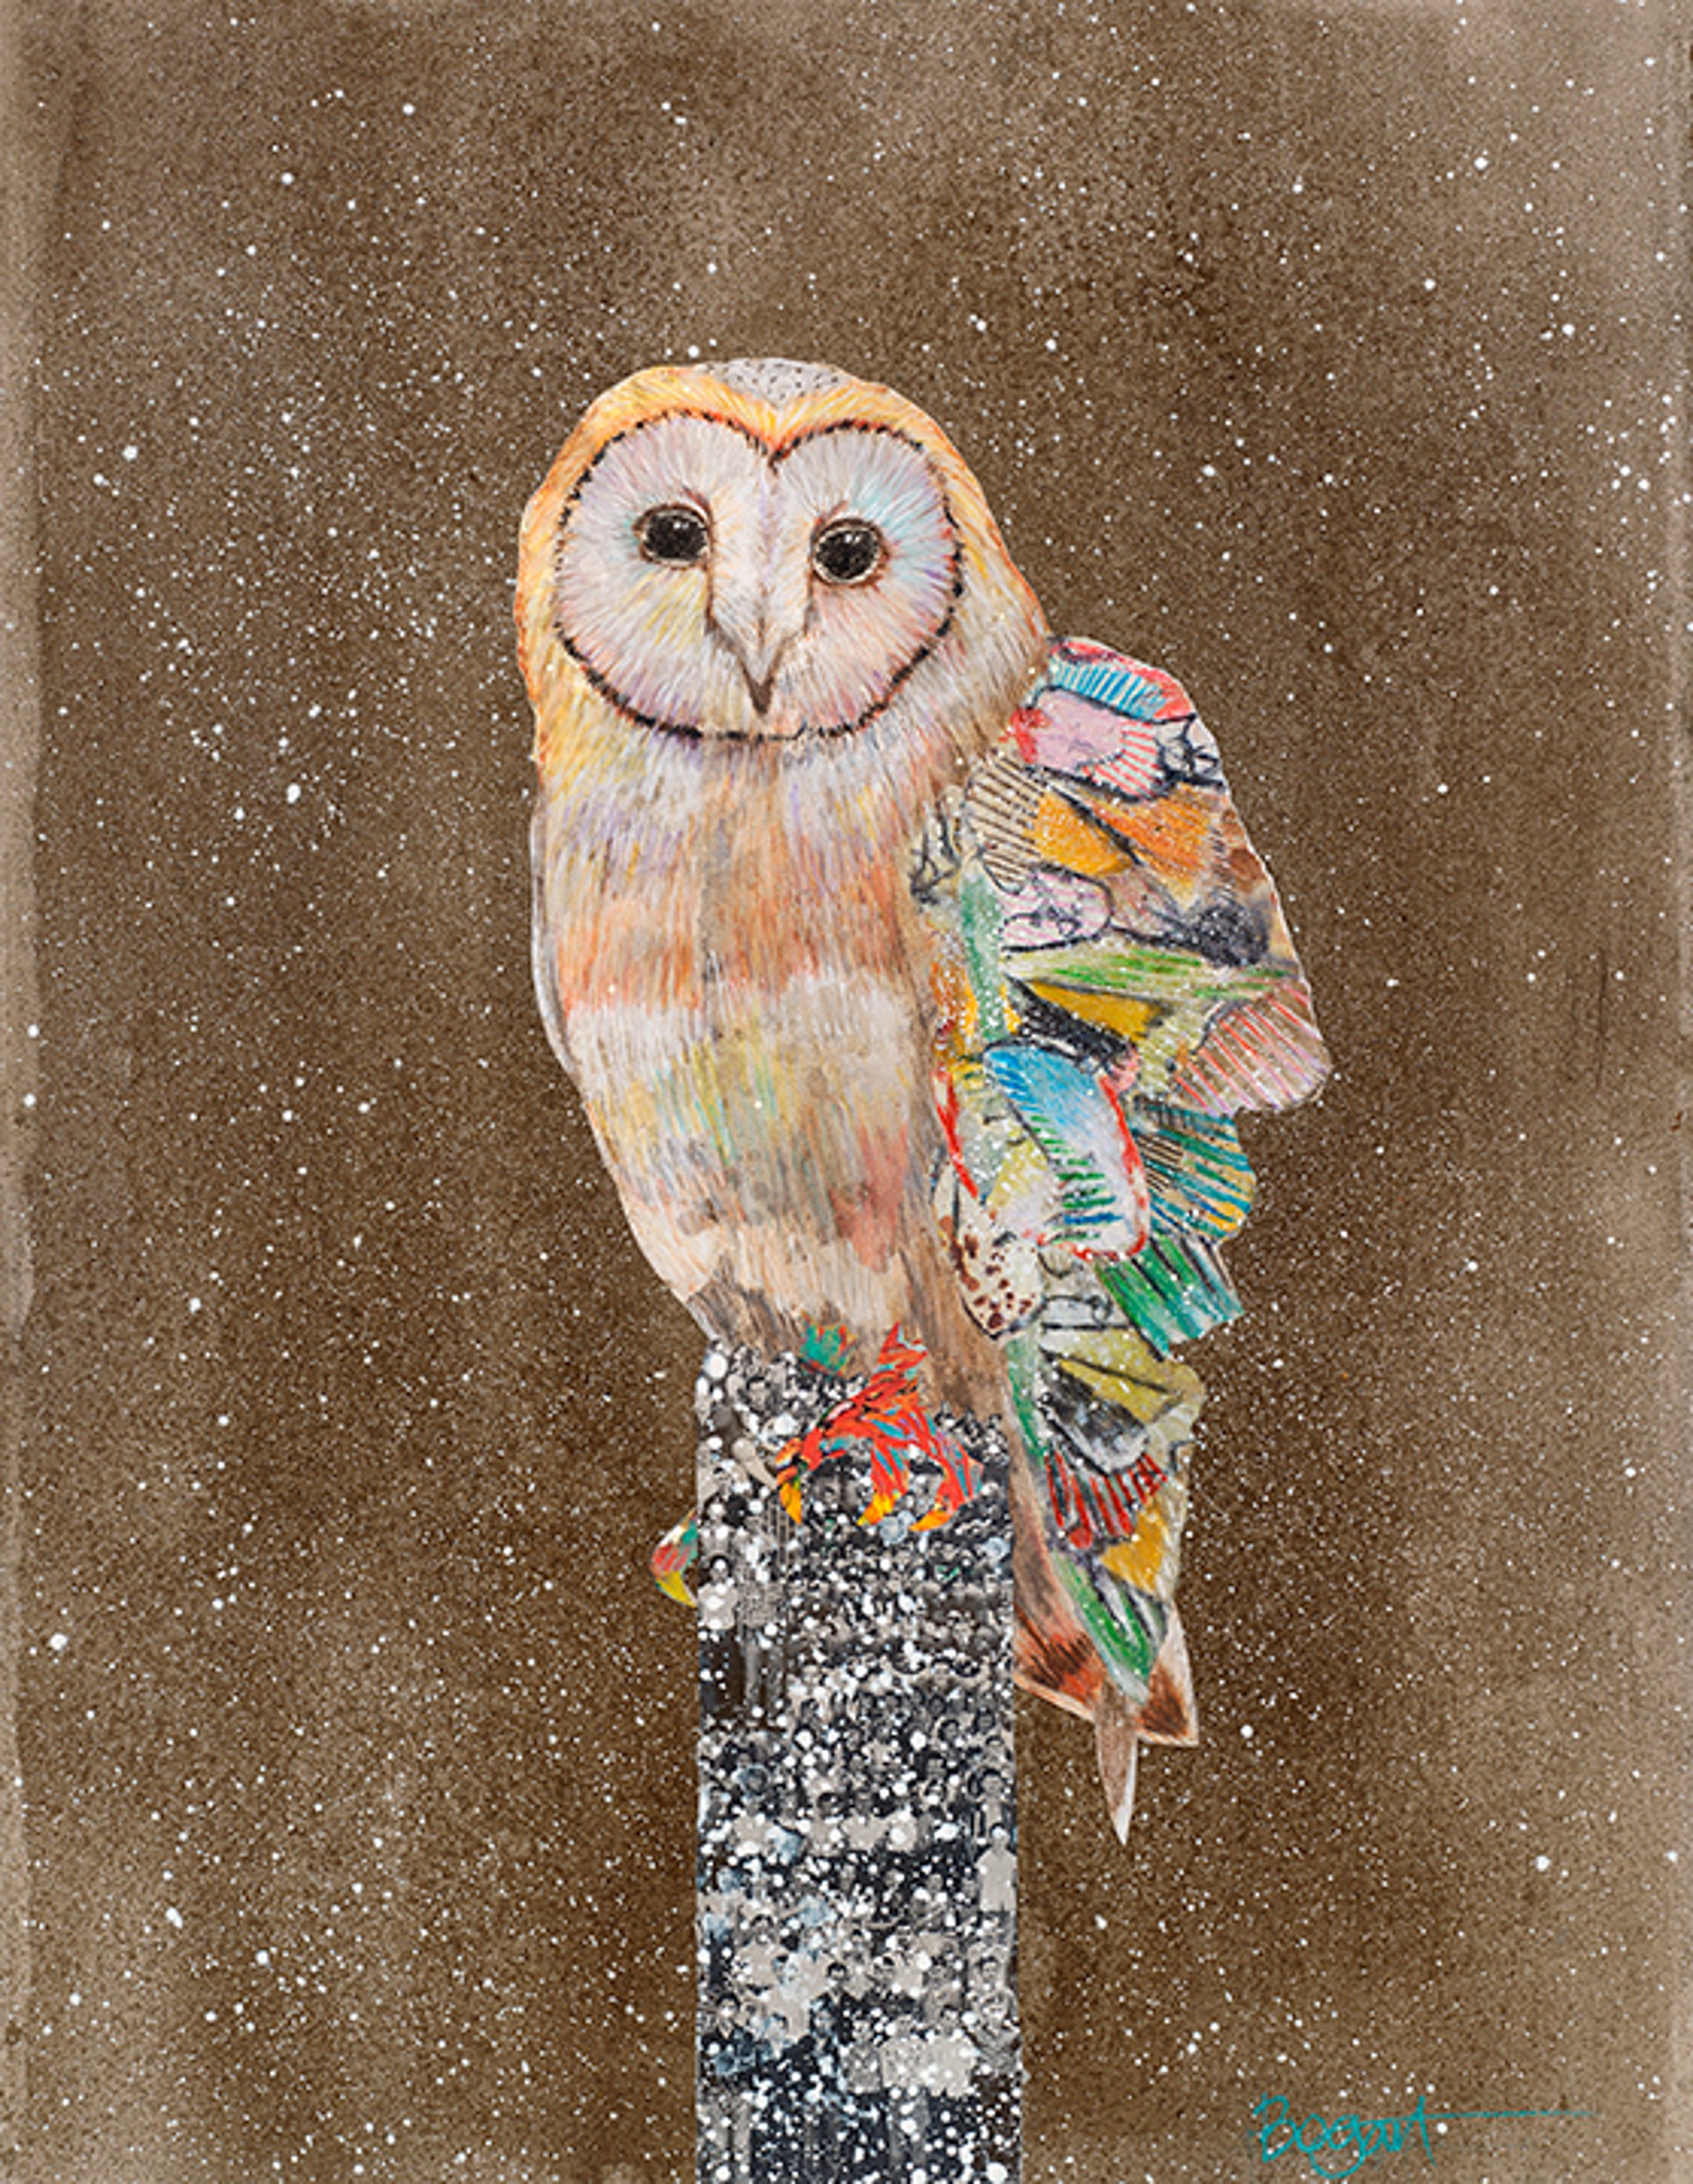 Barn Owl on a Snowy Night 4 by Brenda Bogart - Prints